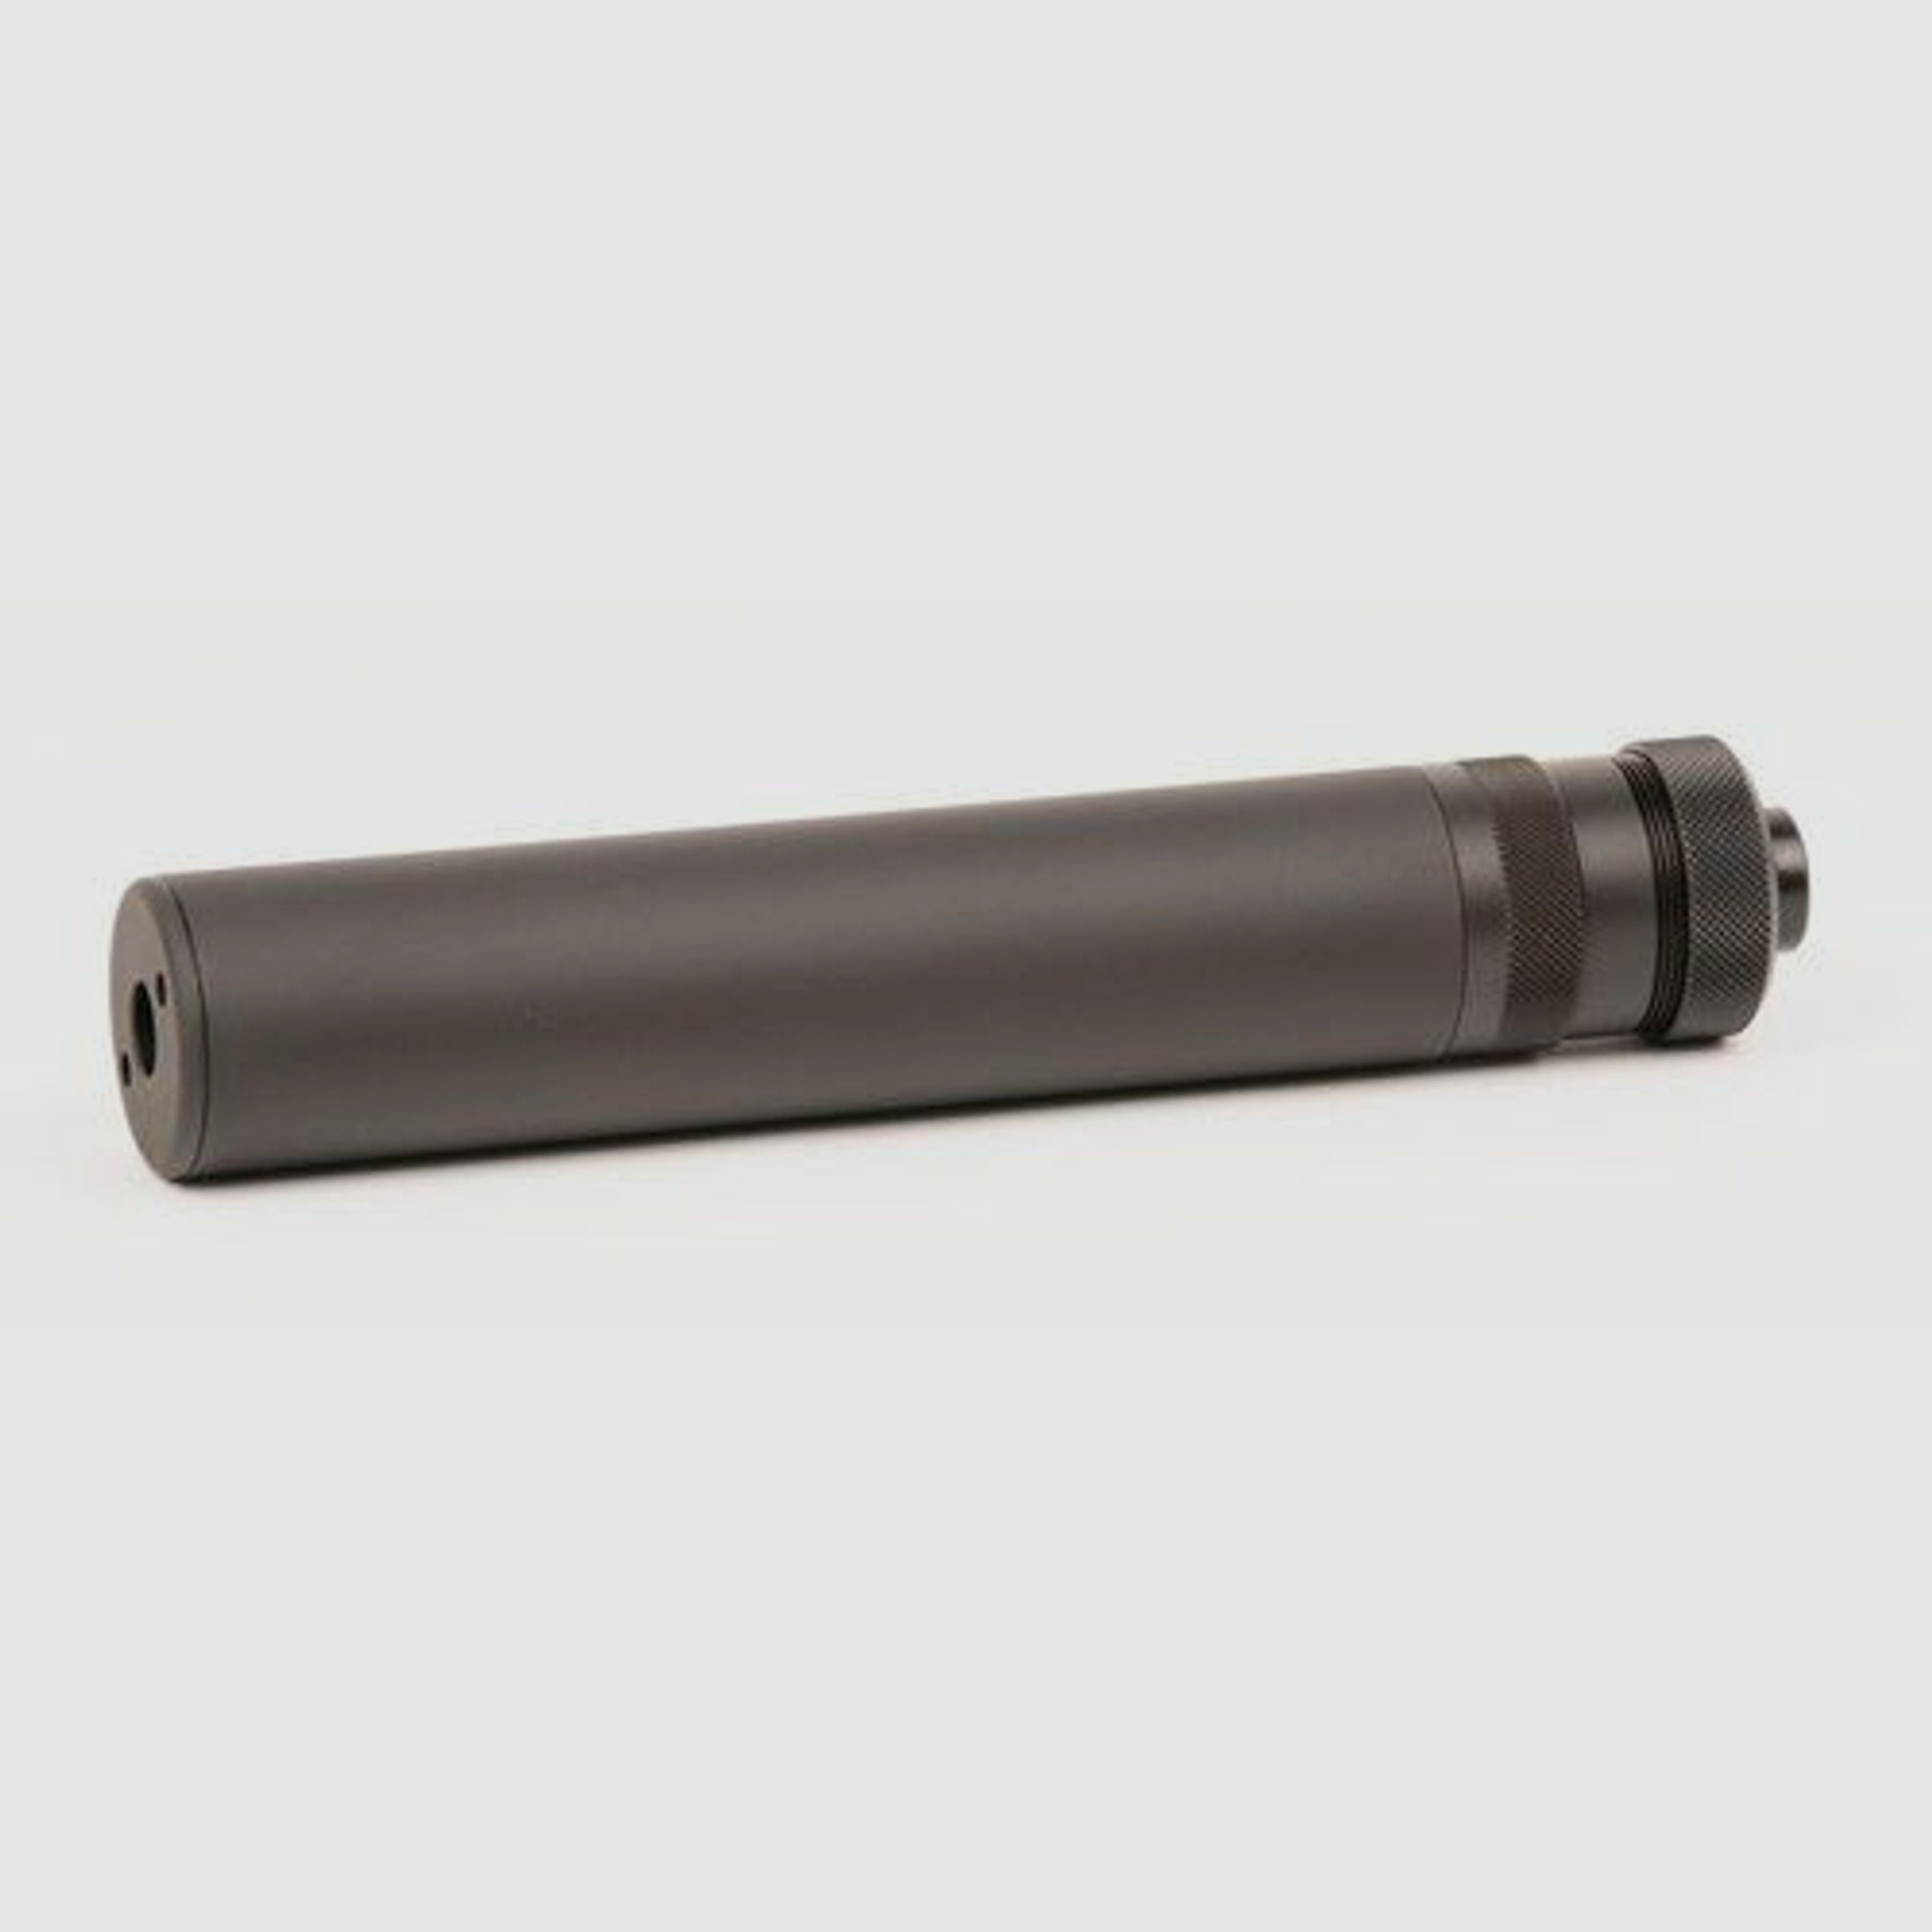 B&T Impuls-IIA™	 Pistolenschalldämpfer, Kal. 9 x 19 mm für Gewindelauf M13.5x1 Links